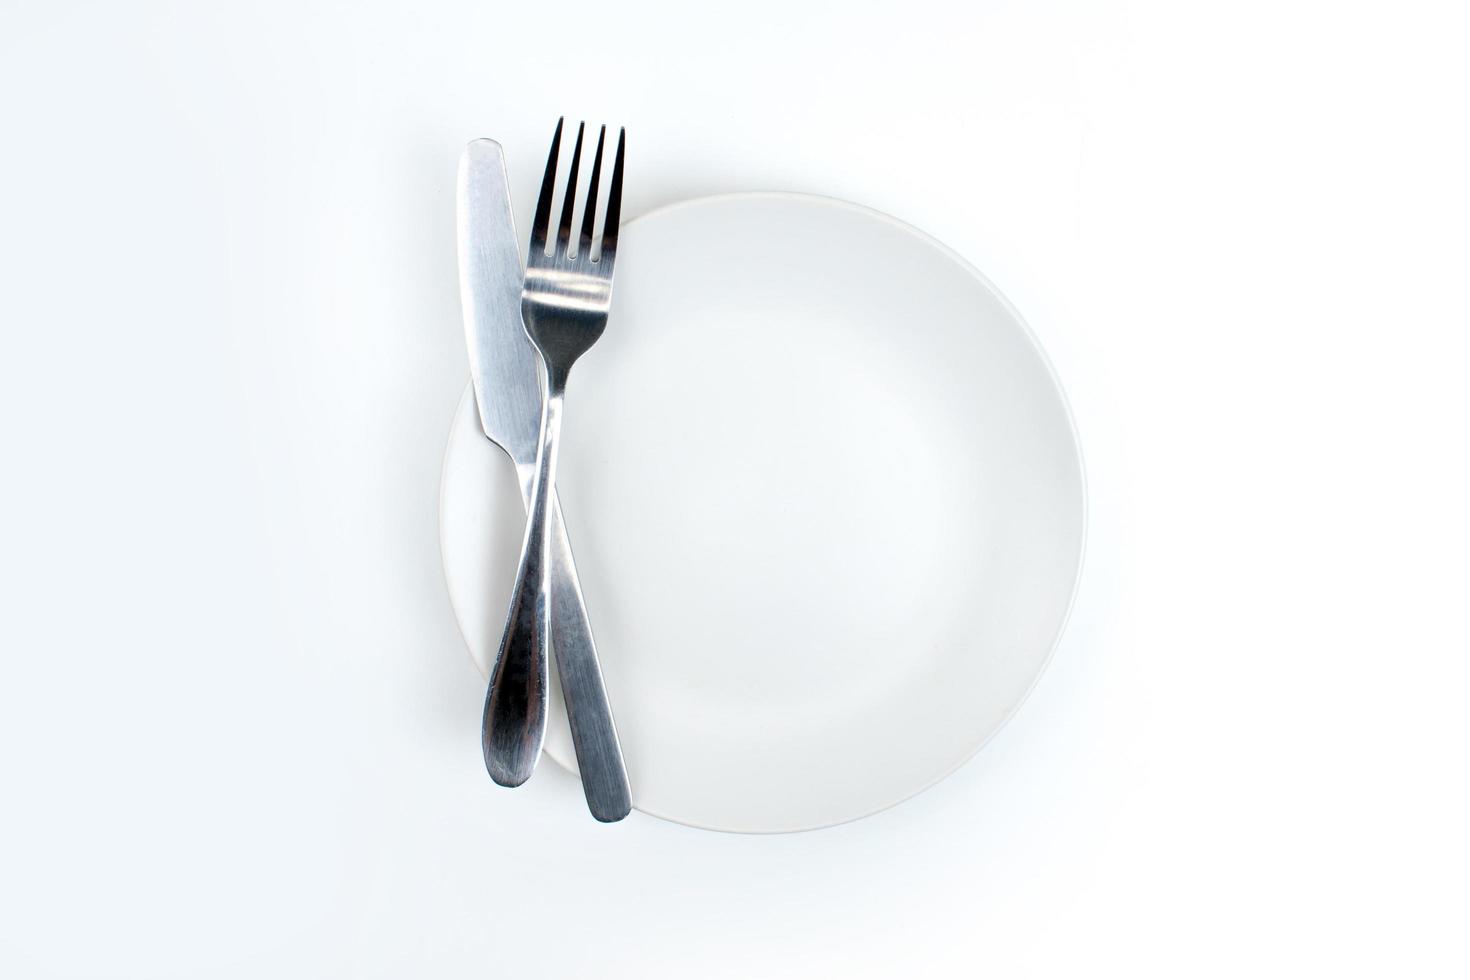 une cuillère et une fourchette sur une assiette blanche photo